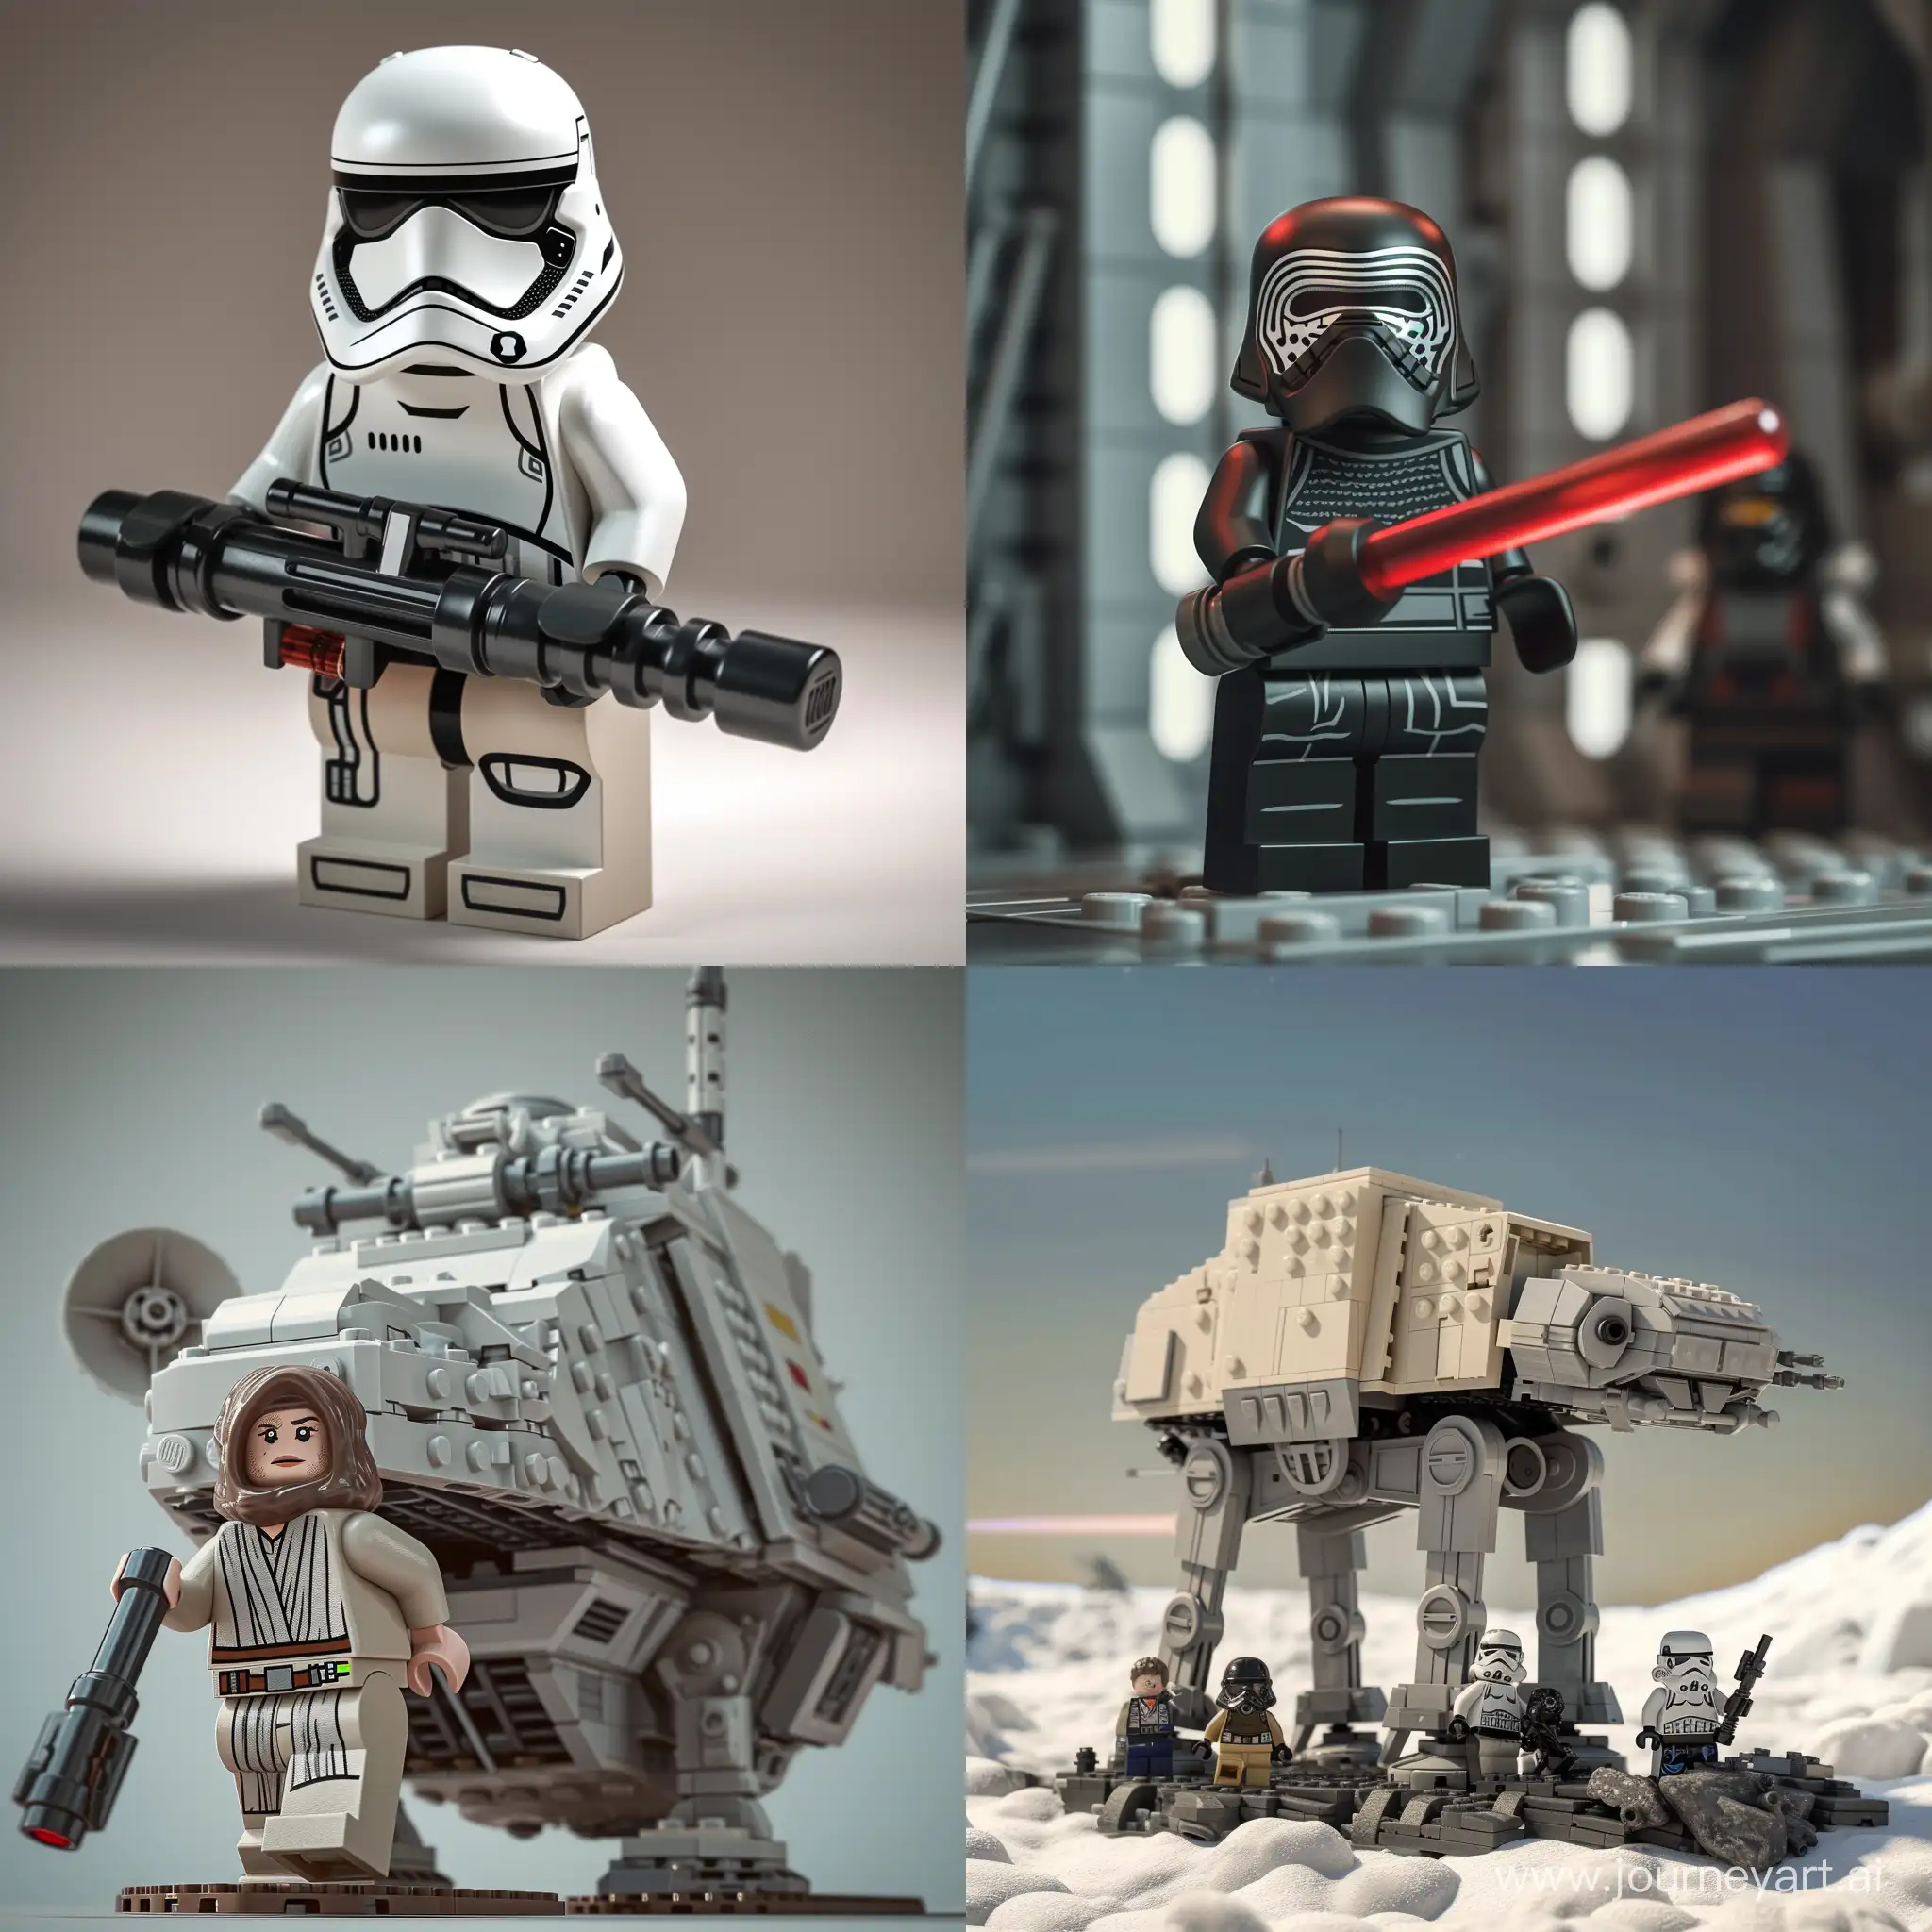 Immersive-3D-Star-Wars-LEGO-Scene